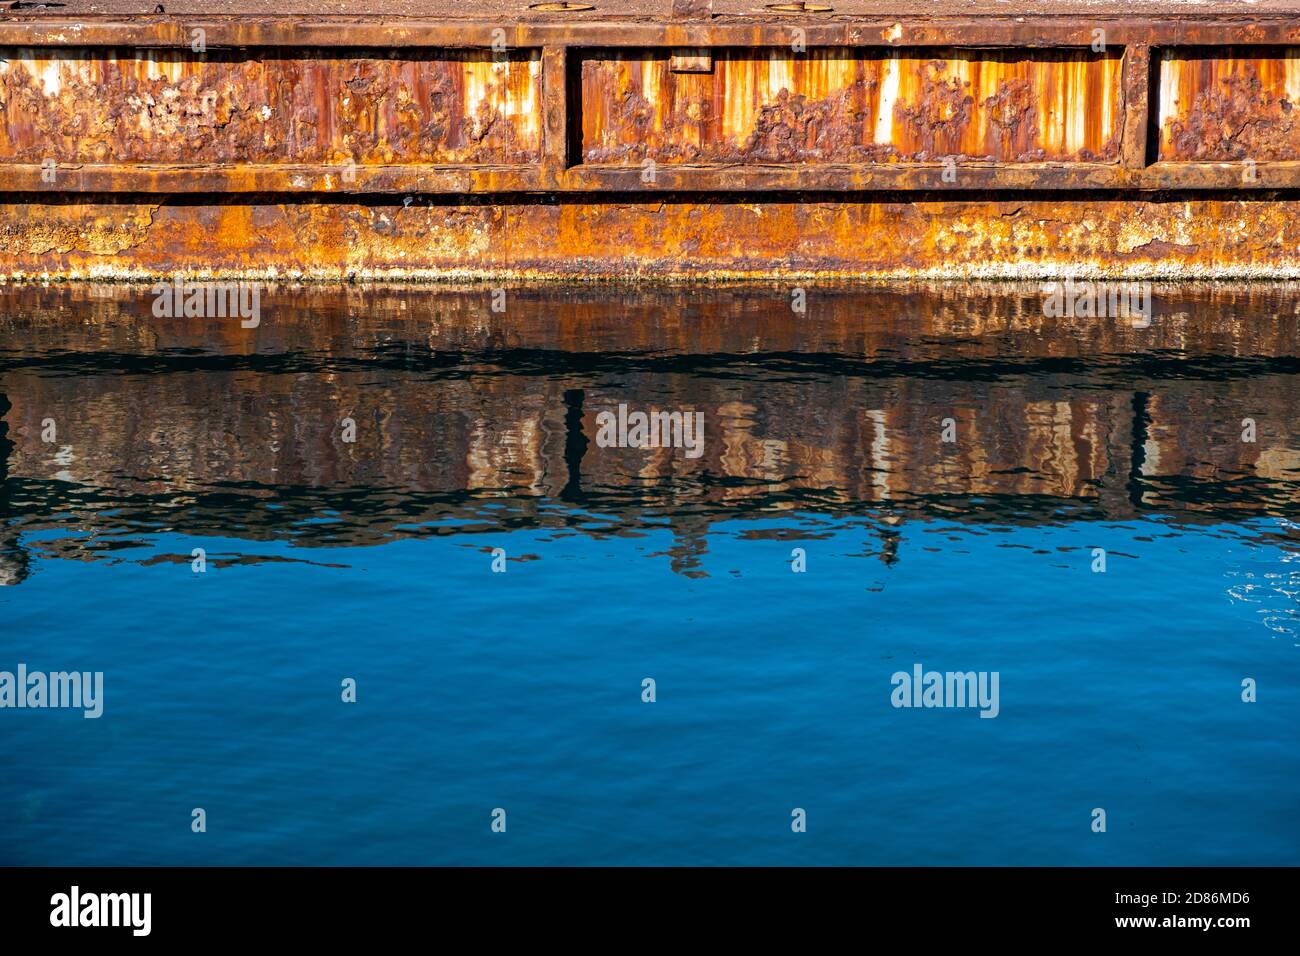 Vieux port industriel en métal rouillé réflexions sur l'eau de mer bleu clair. Banque D'Images